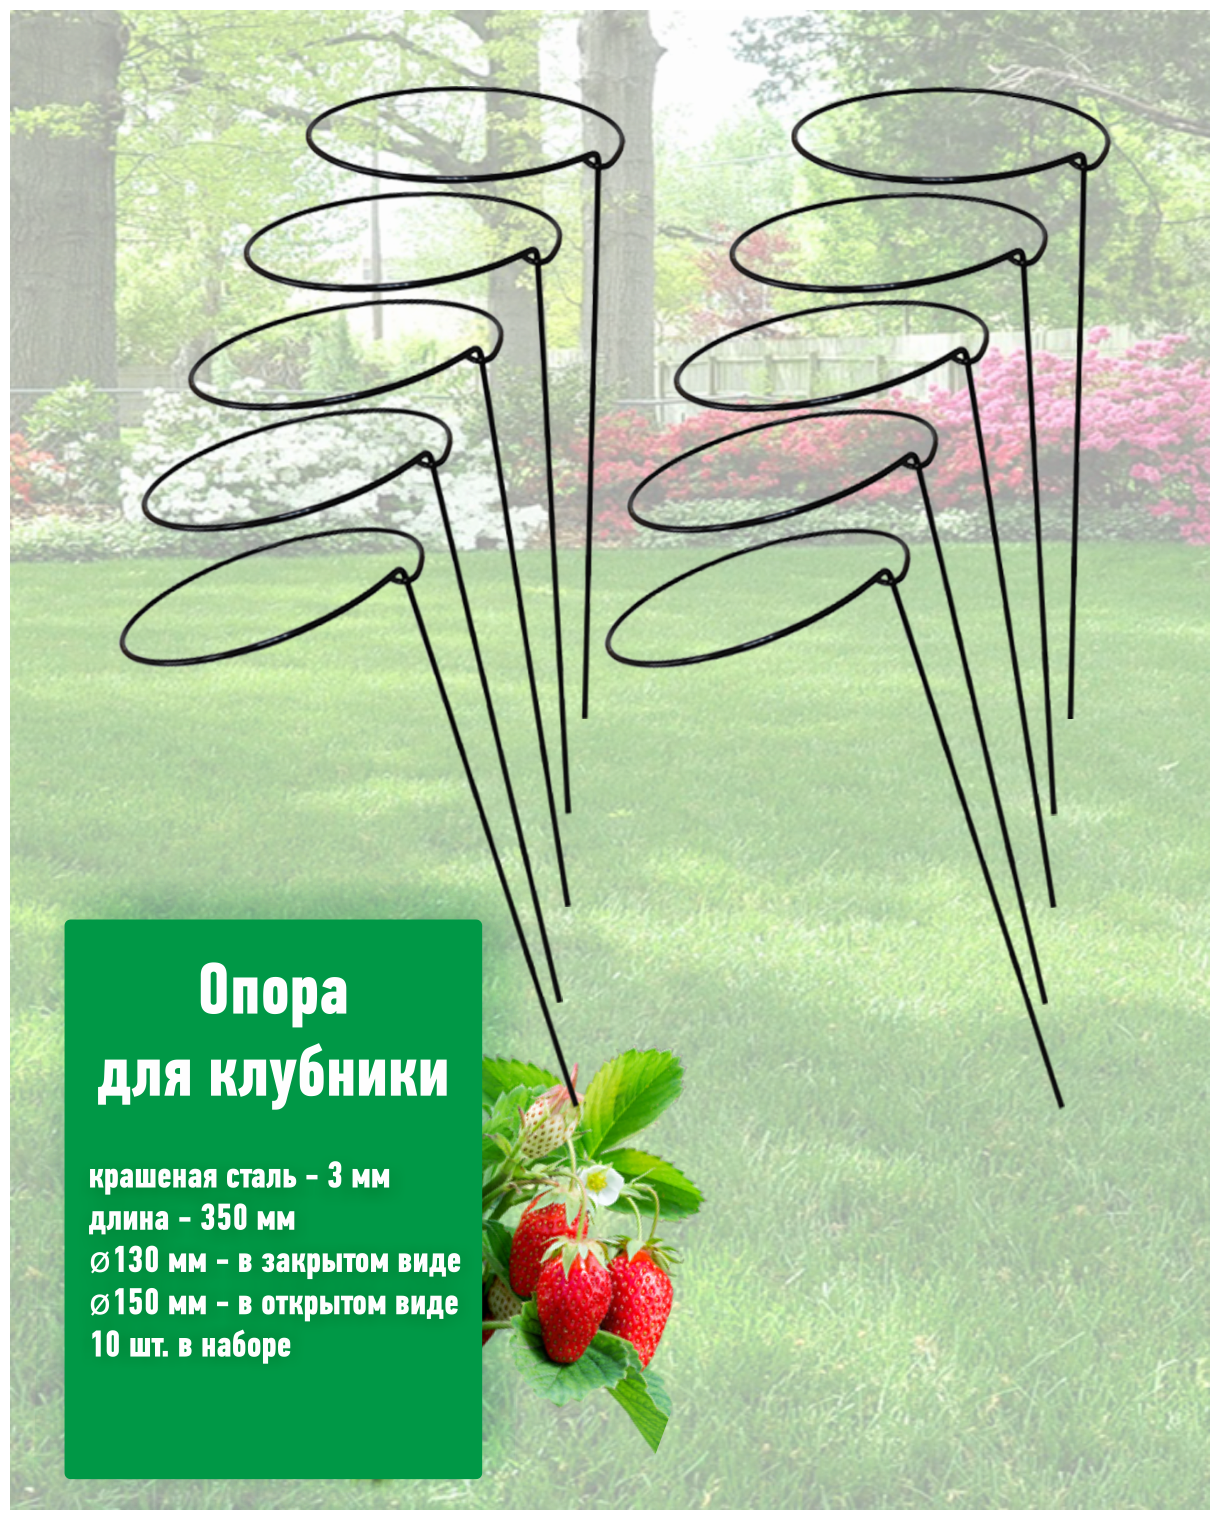 Опора для клубники и садовых/комнатных растений, 10 шт. в наборе Длина 35 см диаметр 15 см, стальная